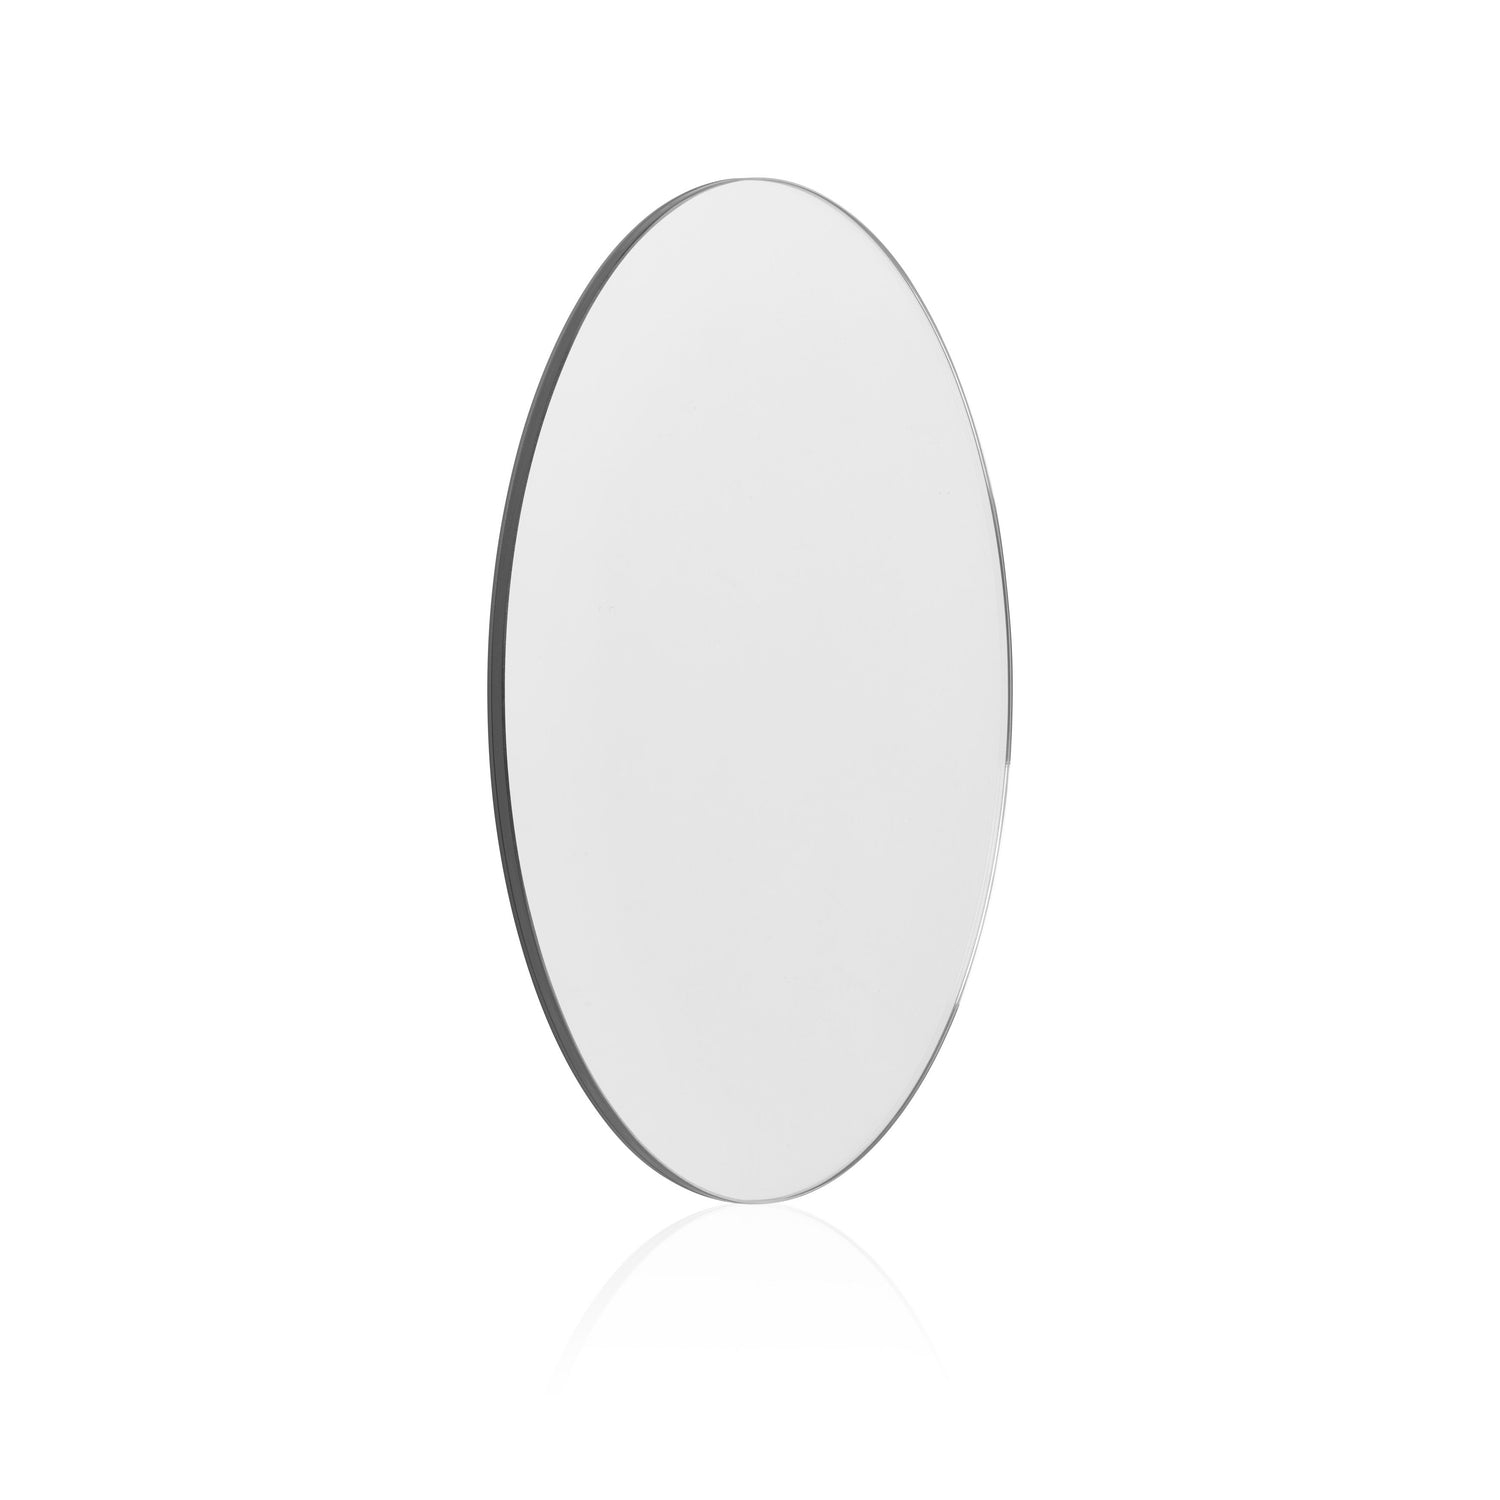 Flex mirror - 1. version